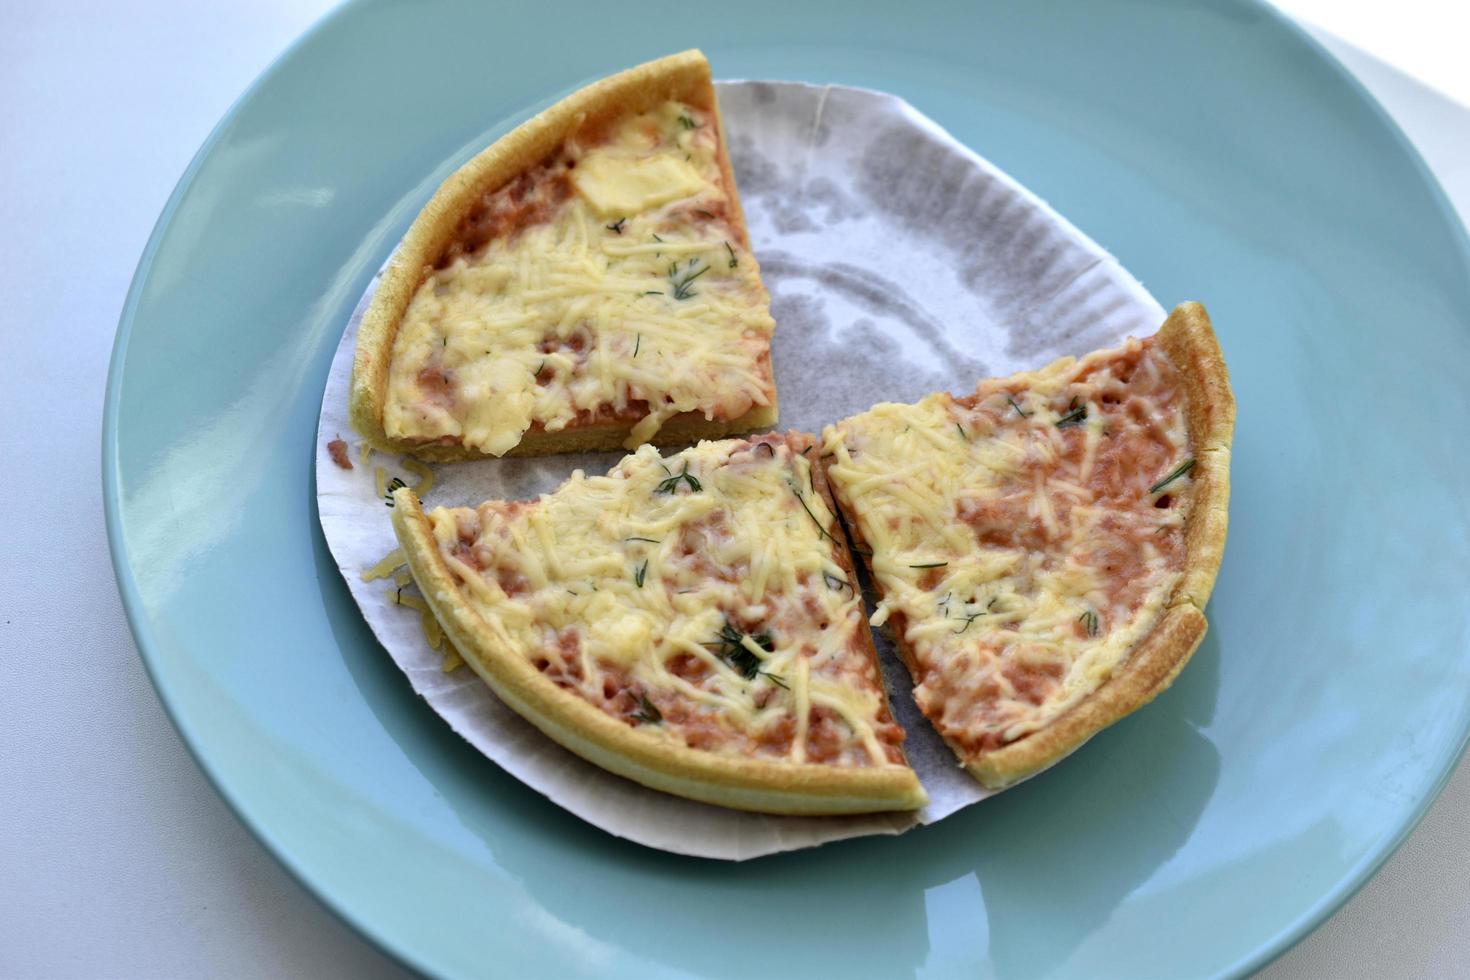 billige kleine Pizza mit Käse Nahaufnahme auf einem Teller foto